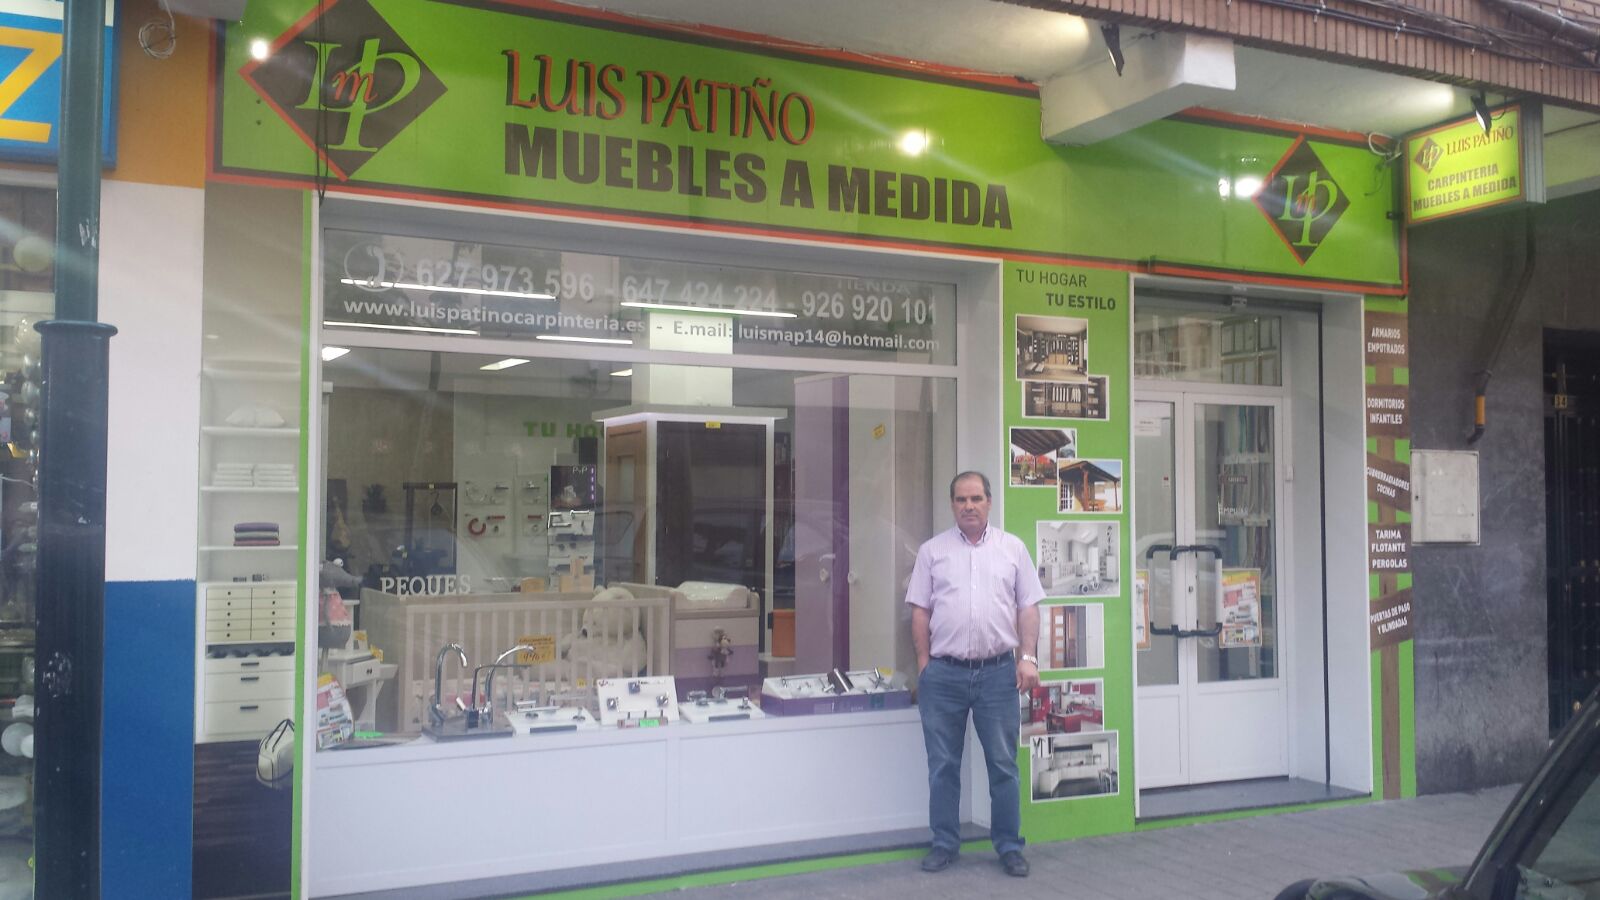 Luis Patiño Muebles a medida abre sus puertas en Ciudad Real